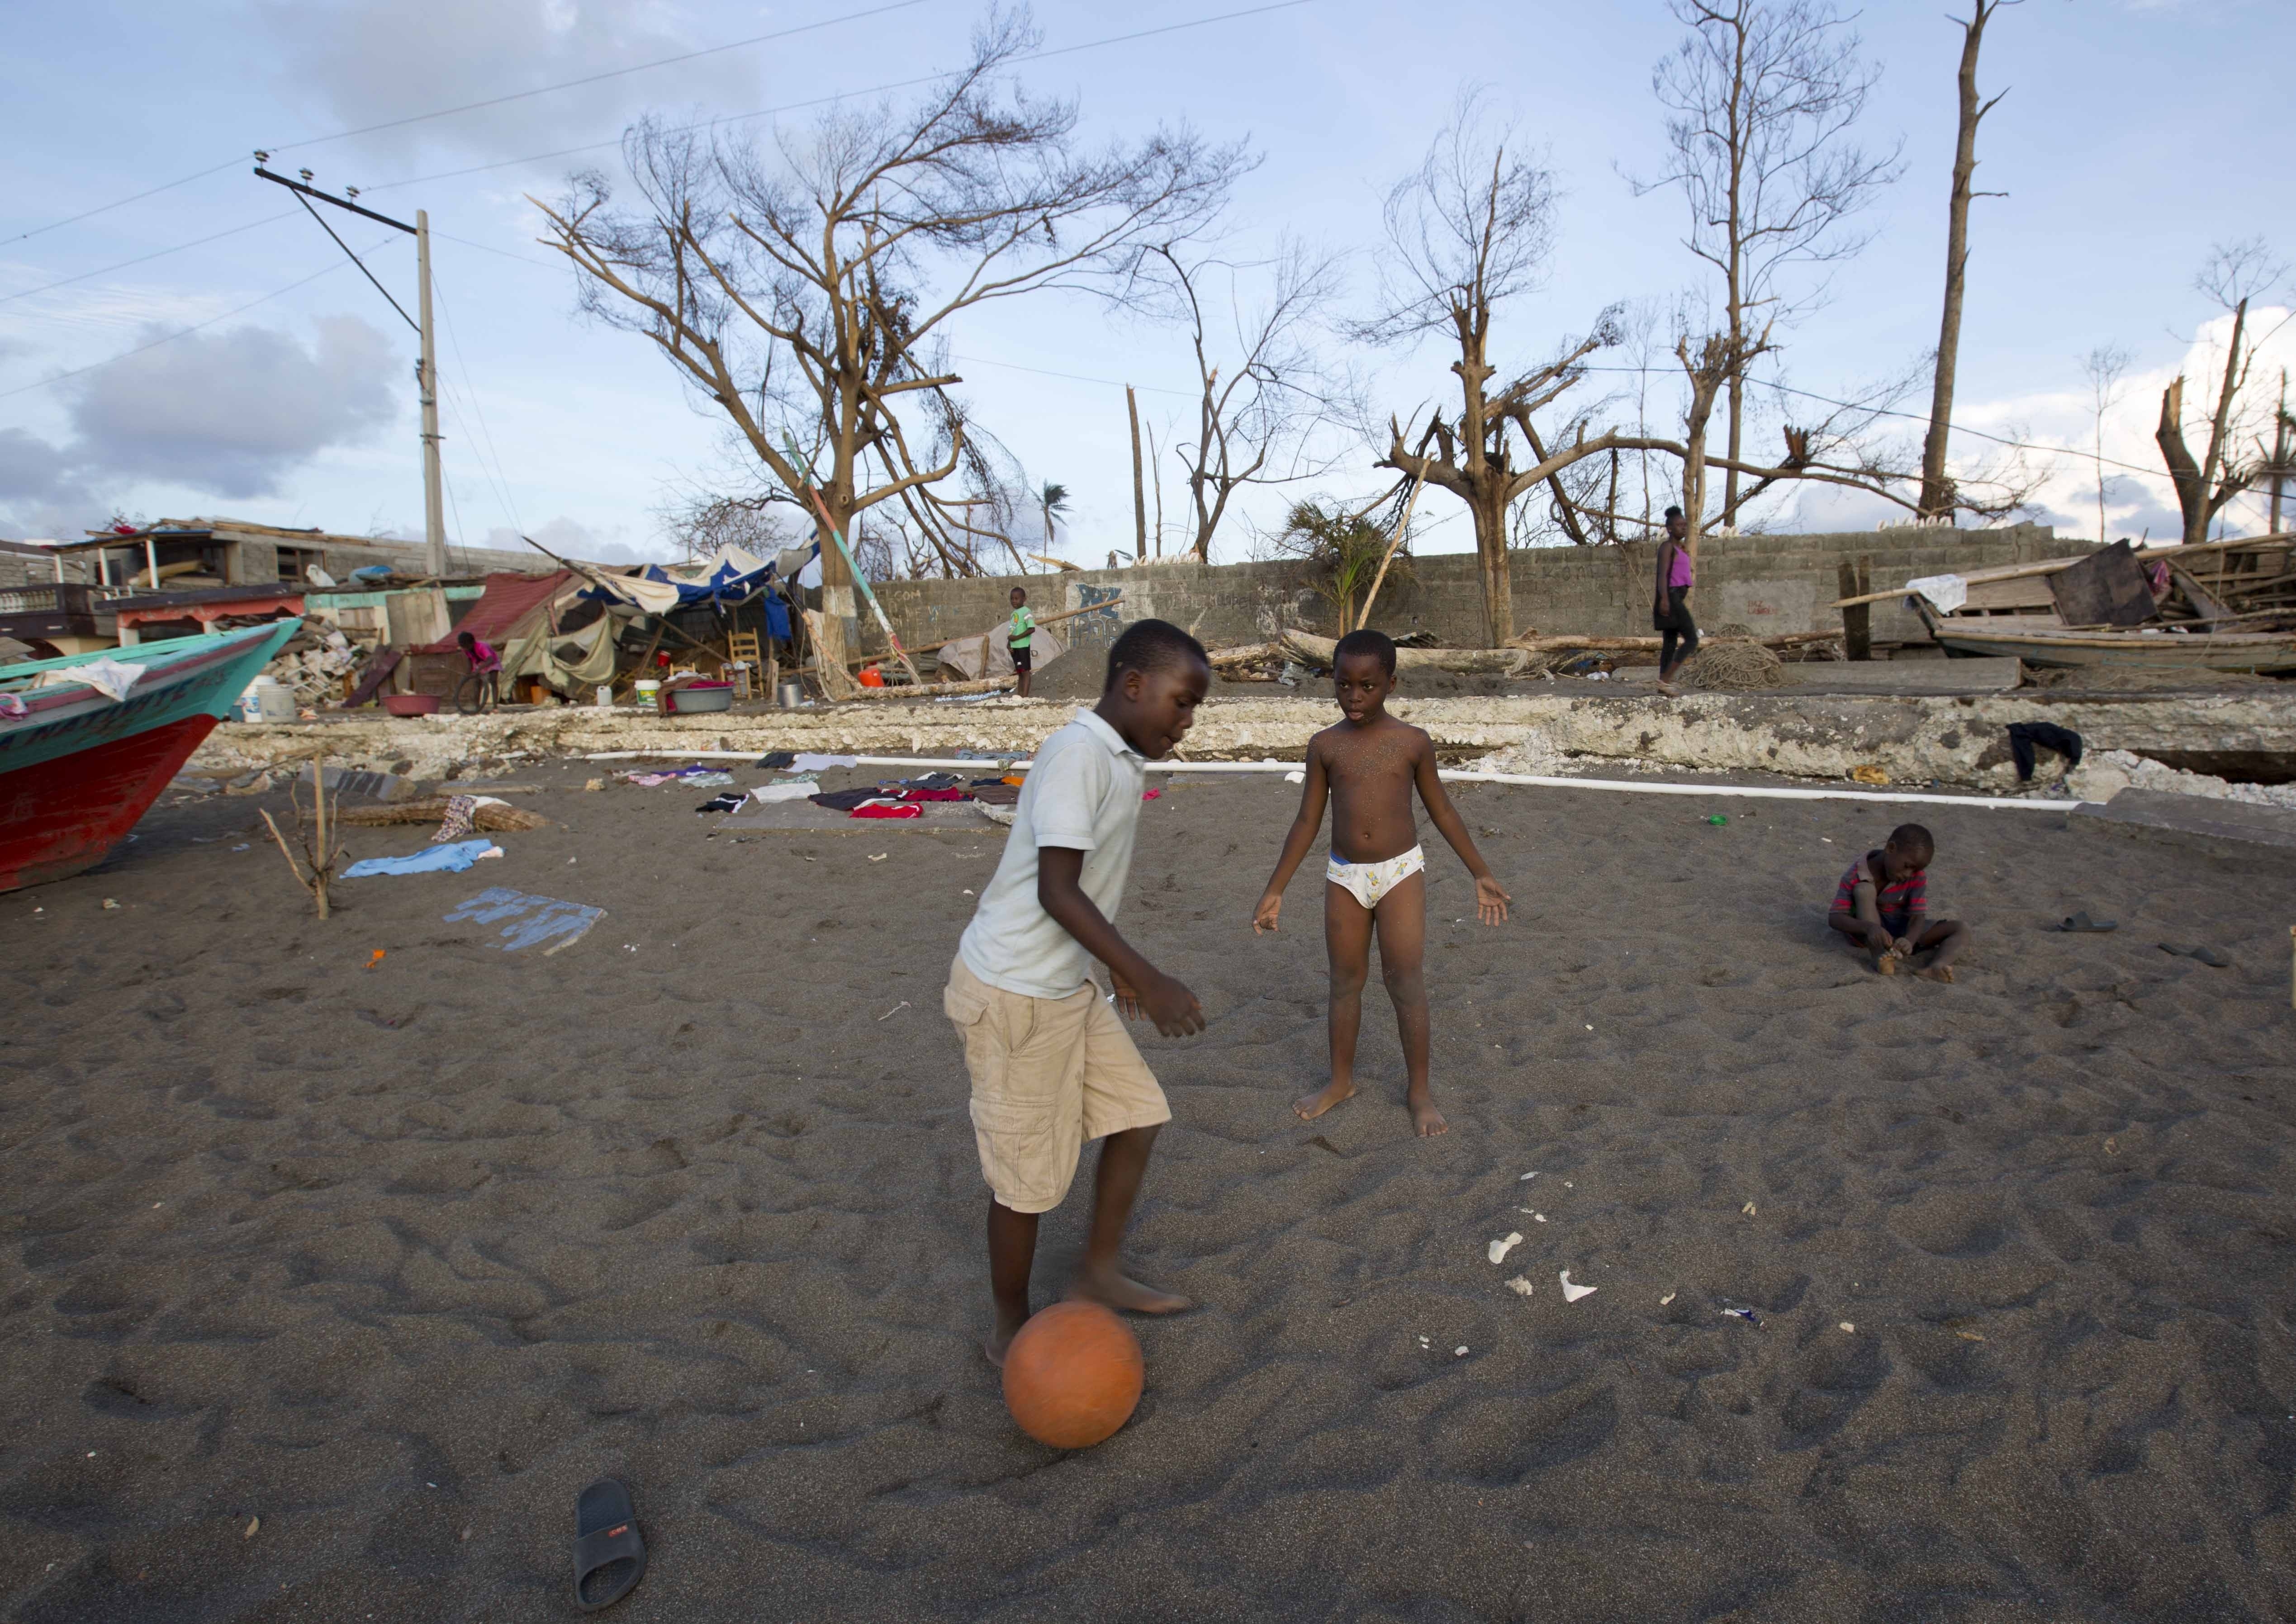 JB 28 Dame-Marie - Chlapci hrajú futbal na zemi znièeného domu po vyèíòaní hurikánu Matthew v meste Dame-Marie na Haiti 11. októbra 2016. Na minimálne 1000 vzrástol u poèet obetí hurikánu Matthew, ktorý minulý týdeò zasiahol ostrovný tát Haiti. Búrka tie pripravila desatisíce ¾udí o domovy a znièila úrodu v regióne oznaèovanom za obilnicu tejto chudobnej karibskej krajiny. Haiti cez víkend vyhlásilo trojdòový tátny smútok na poèes obetí, ktoré v nede¾u zaèali pochováva do masových hrobov, aby sa zabránilo íreniu cholery v postihnutých oblastiach. FOTO TASR/AP  Boys play soccer on the ground of a destroyed house after the Hurricane Matthew in Dame-Marie, Haiti on Tuesday, Oct. 11, 2016. Nearly a week after the storm smashed into southwestern Haiti, some communities along the southern coast have yet to receive any assistance, leaving residents who have lost their homes and virtually all of their belongings struggling to find shelter and potable water. (AP Photo/Dieu Nalio Chery)